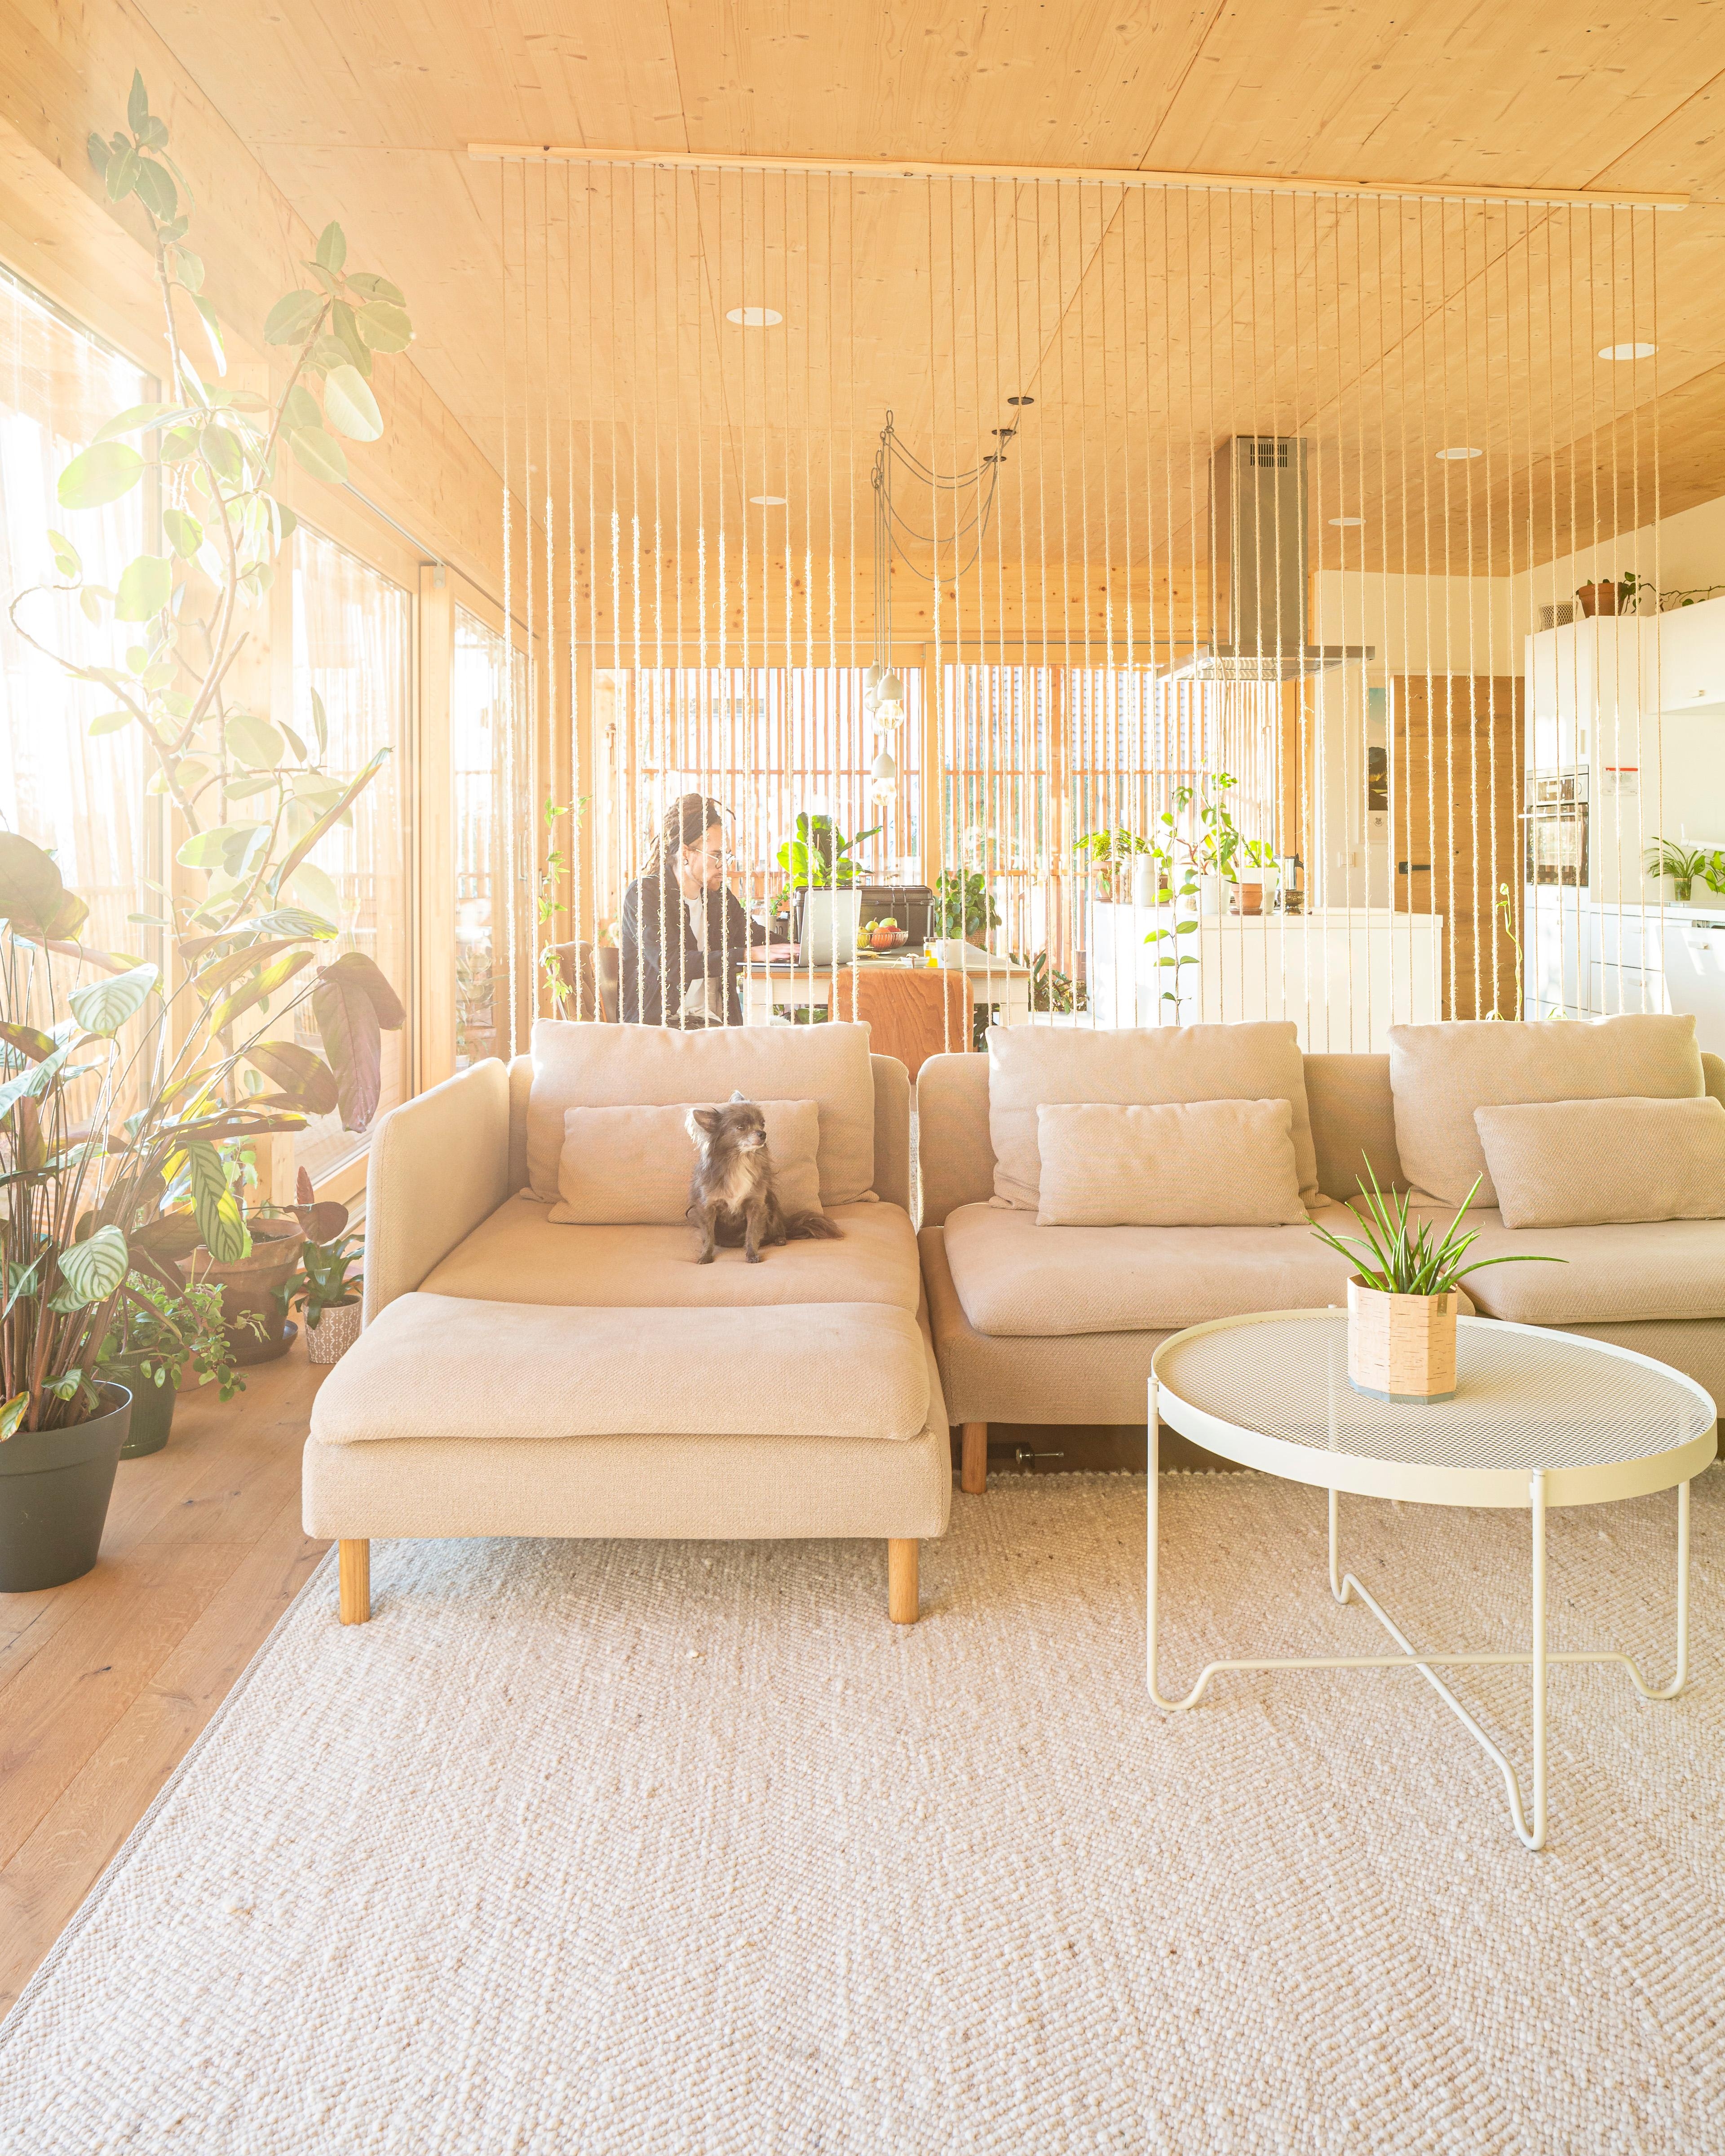 Unser Wohnzimmer, mit unserer DIY #plantwall im Hintergrund

#couchstyle #natürlichwohnen